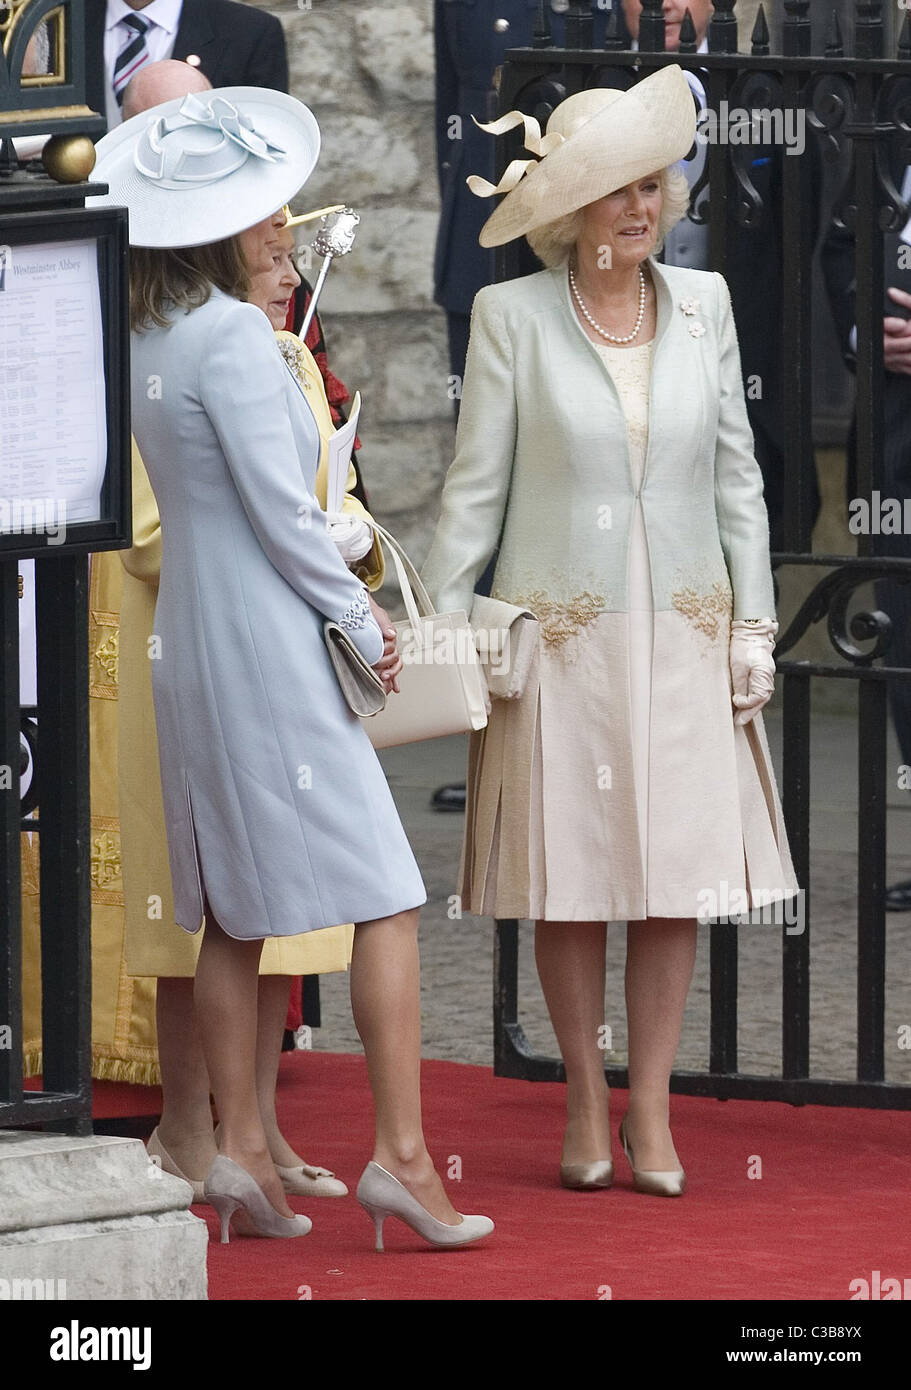 Königliche Hochzeit von Prinz William, Catherine Middleton in der Westminster Abbey am 29. April 2011 in London, England.     Carole Stockfoto